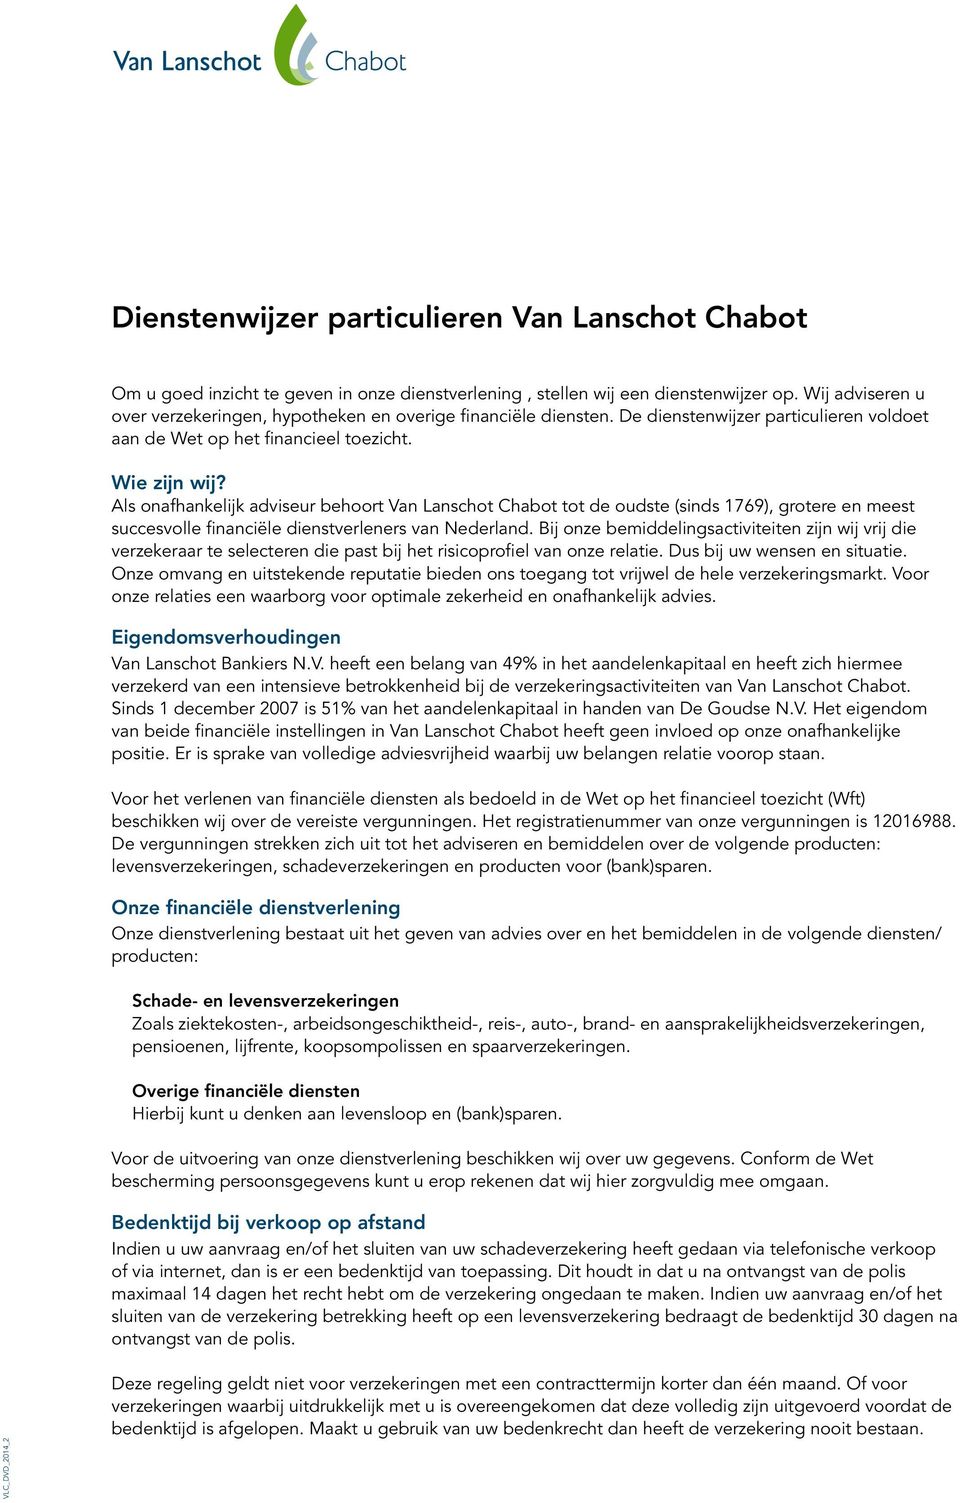 Als onafhankelijk adviseur behoort Van Lanschot Chabot tot de oudste (sinds 1769), grotere en meest succesvolle financiële dienstverleners van Nederland.